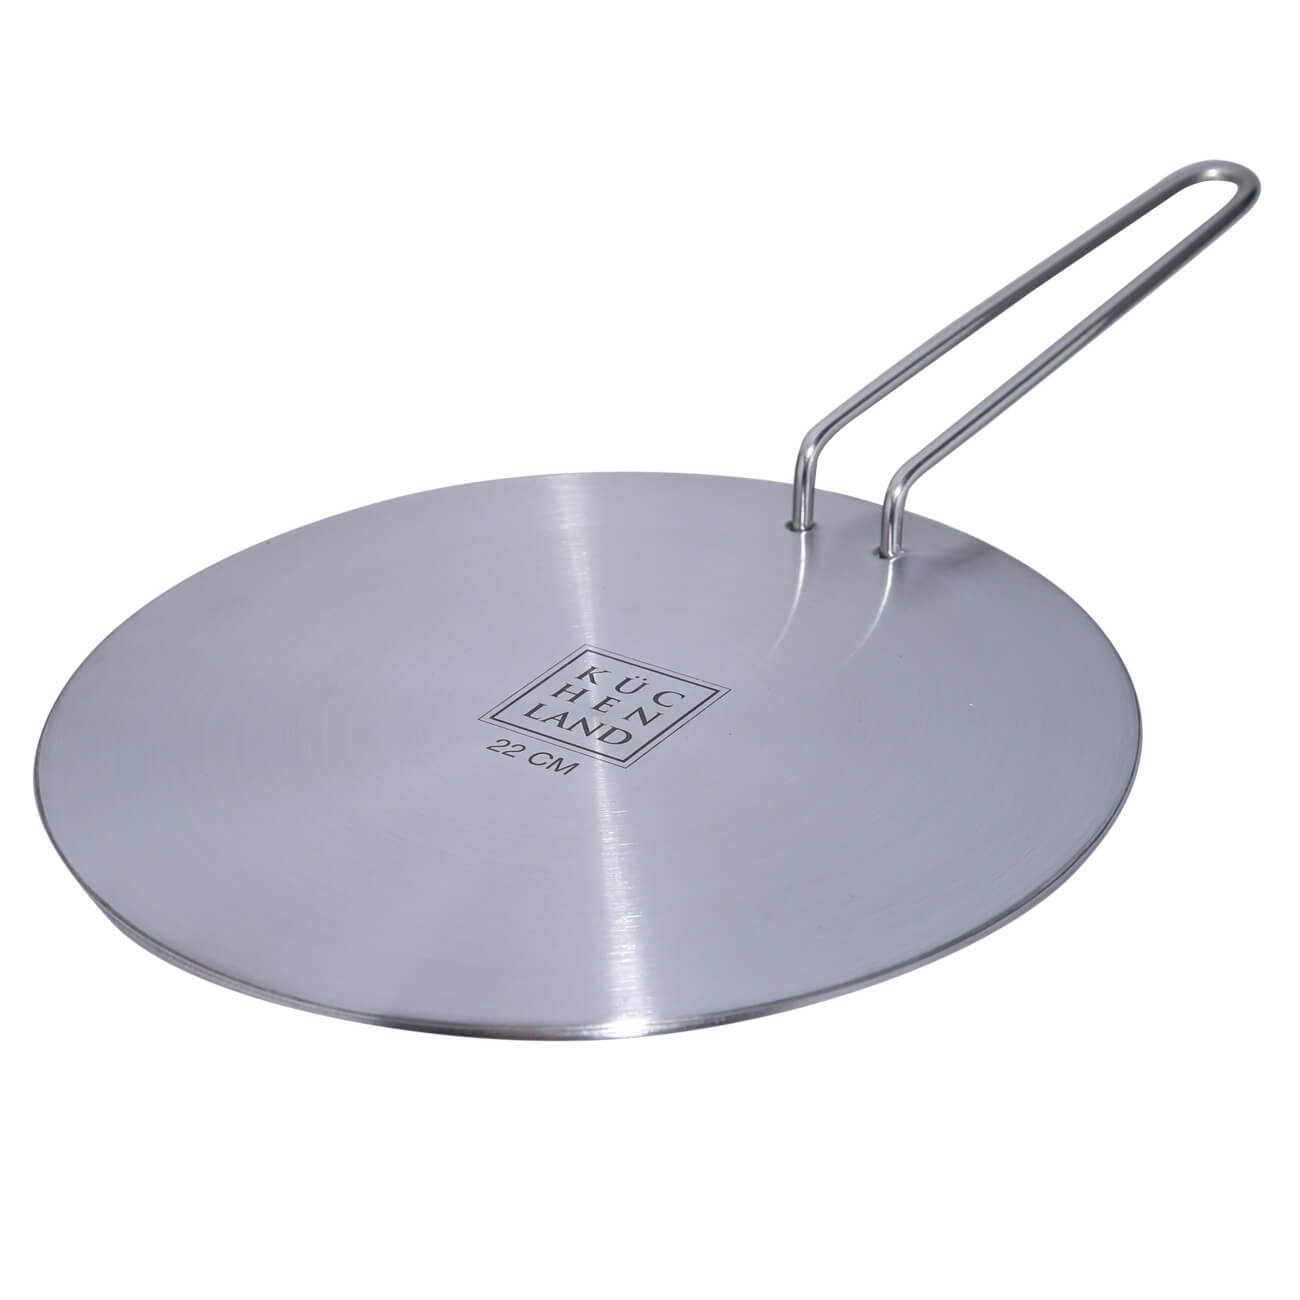 Kuchenland Диск-переходник для индукционной плиты, 22 см, со съемной ручкой, сталь/алюминий, Induction